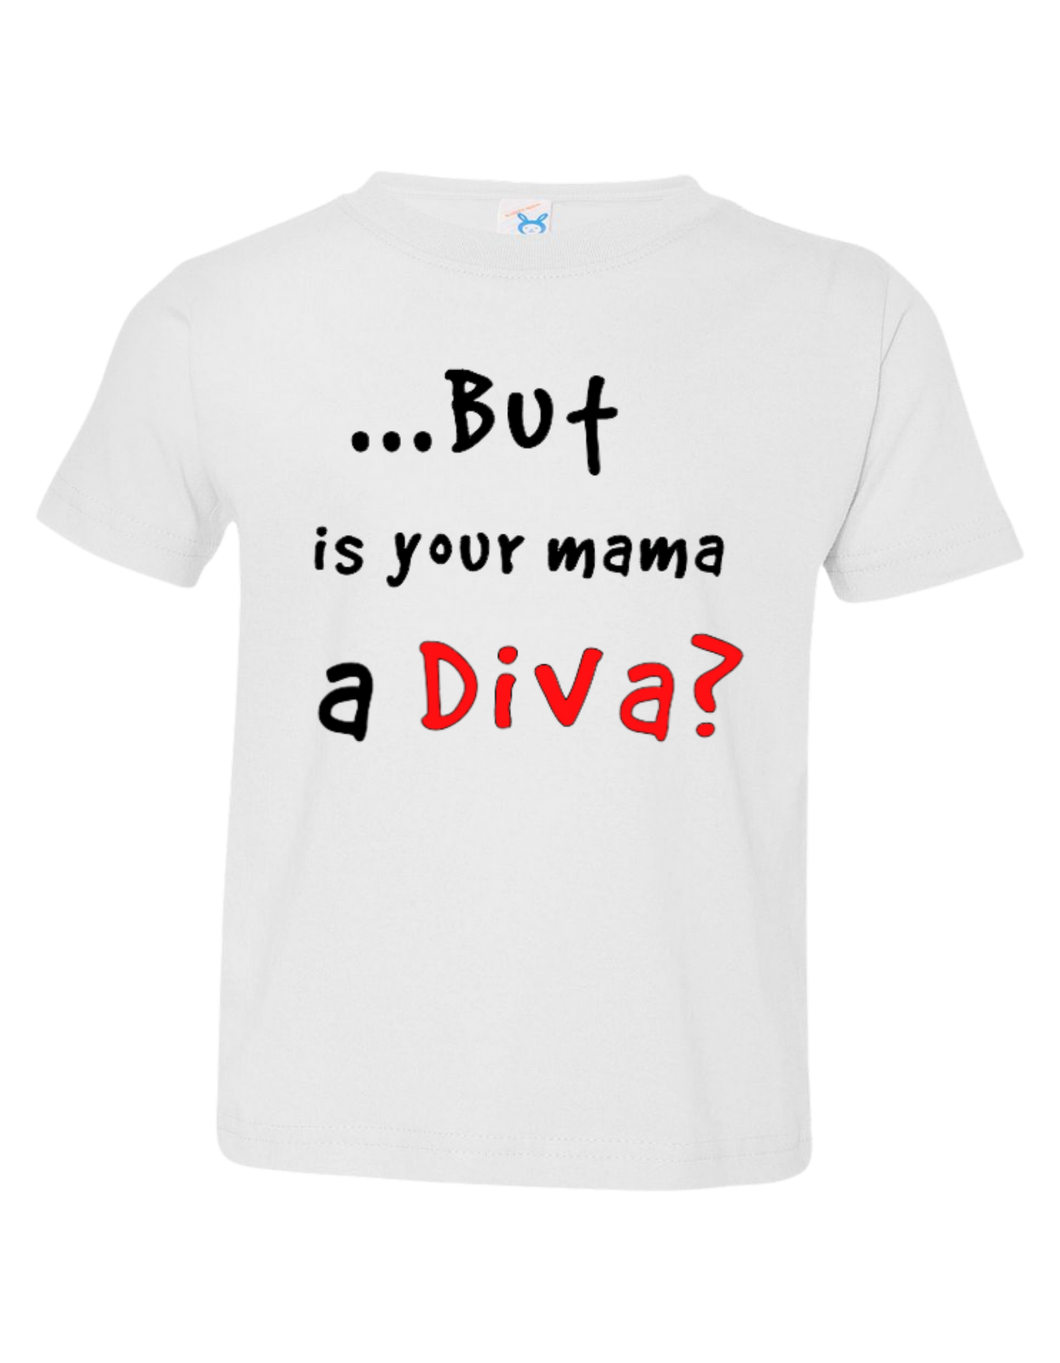 Mama a Diva? 9T